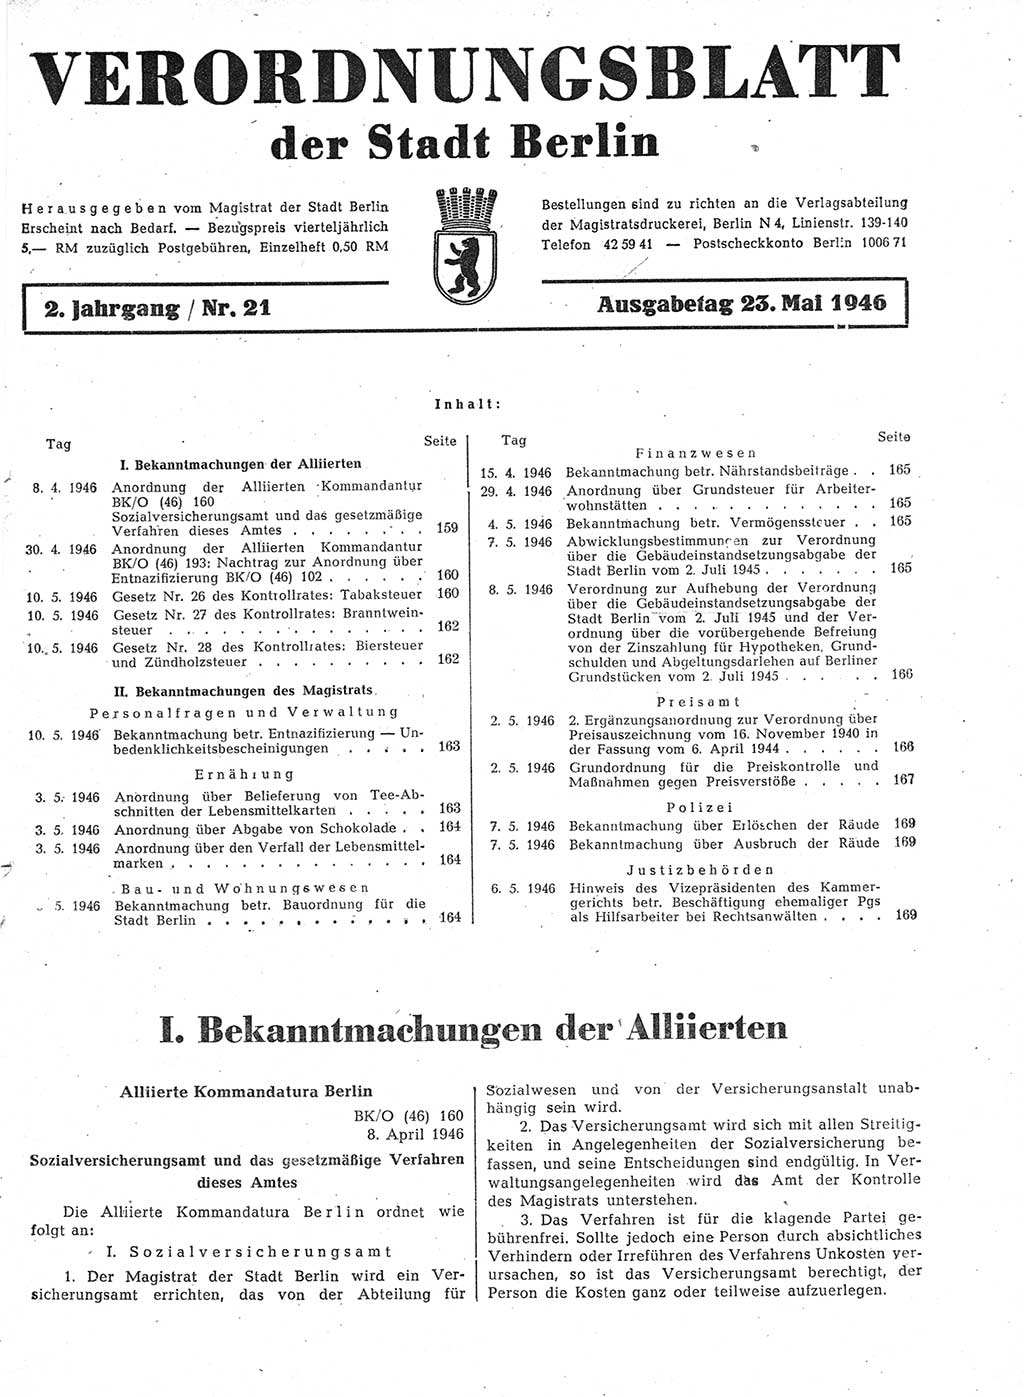 Verordnungsblatt (VOBl.) der Stadt Berlin, für Groß-Berlin 1946, Seite 159 (VOBl. Bln. 1946, S. 159)